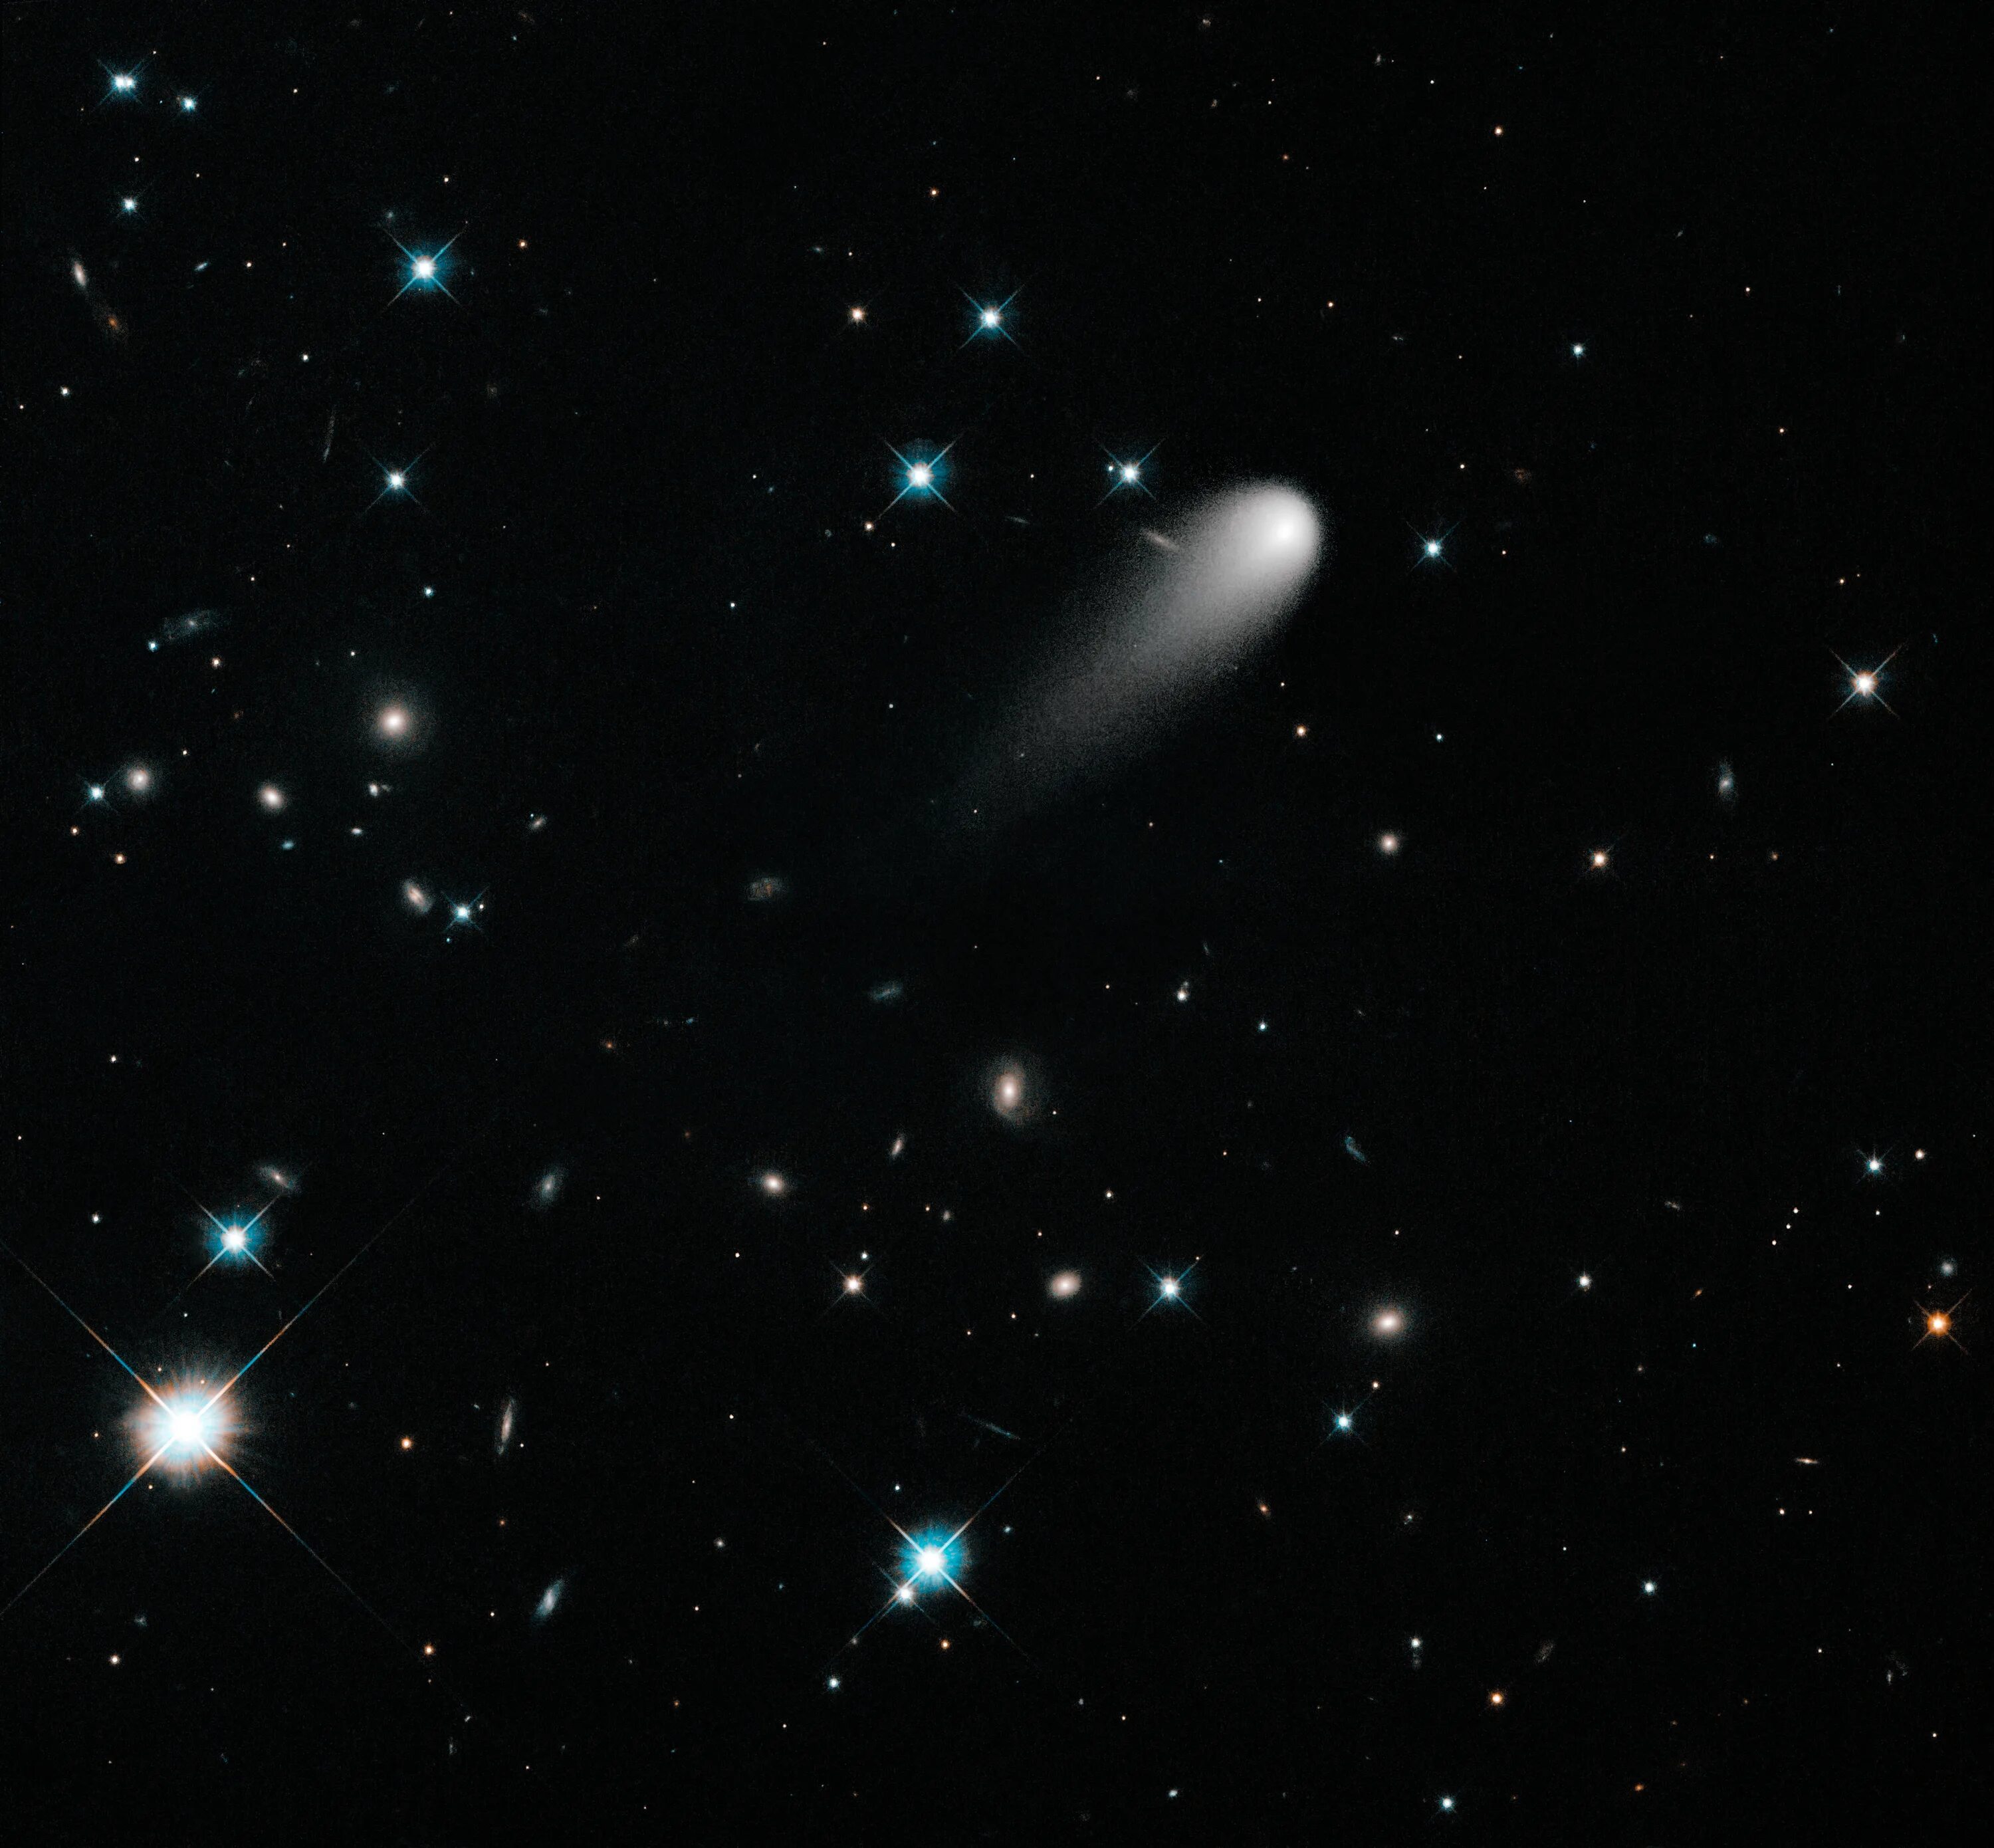 Комета Ison. C/2012 s1 Ison. Снимок Хаббл Комета. Комета с телескопа Хаббл. Отметь небесные тела